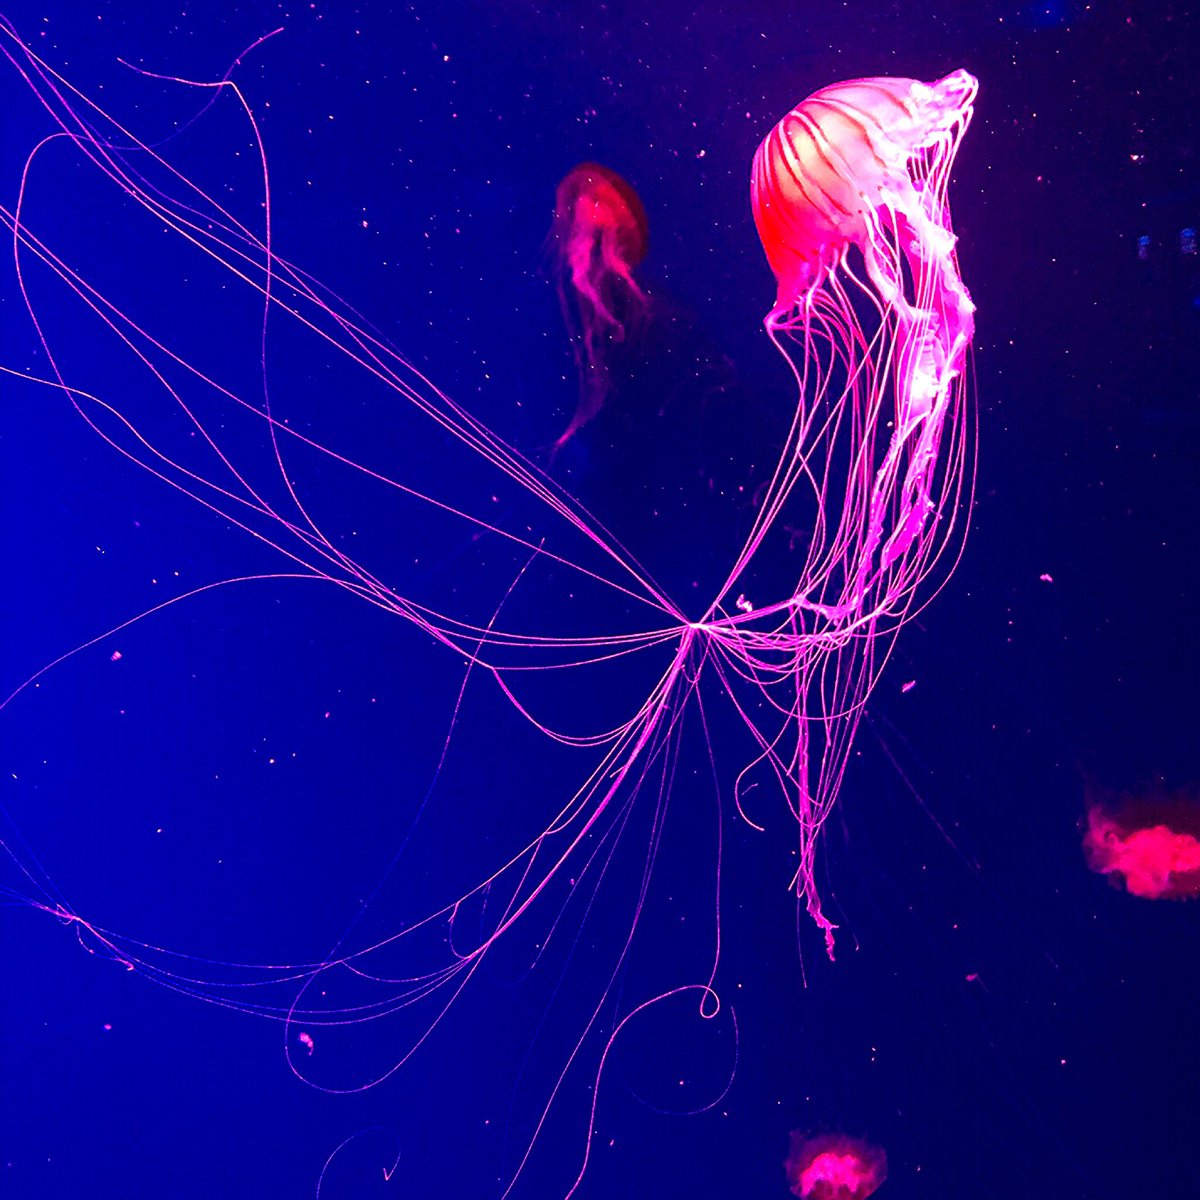 Удивительные существа - медузы.pic.twitter.com/sTAf79PJkX.